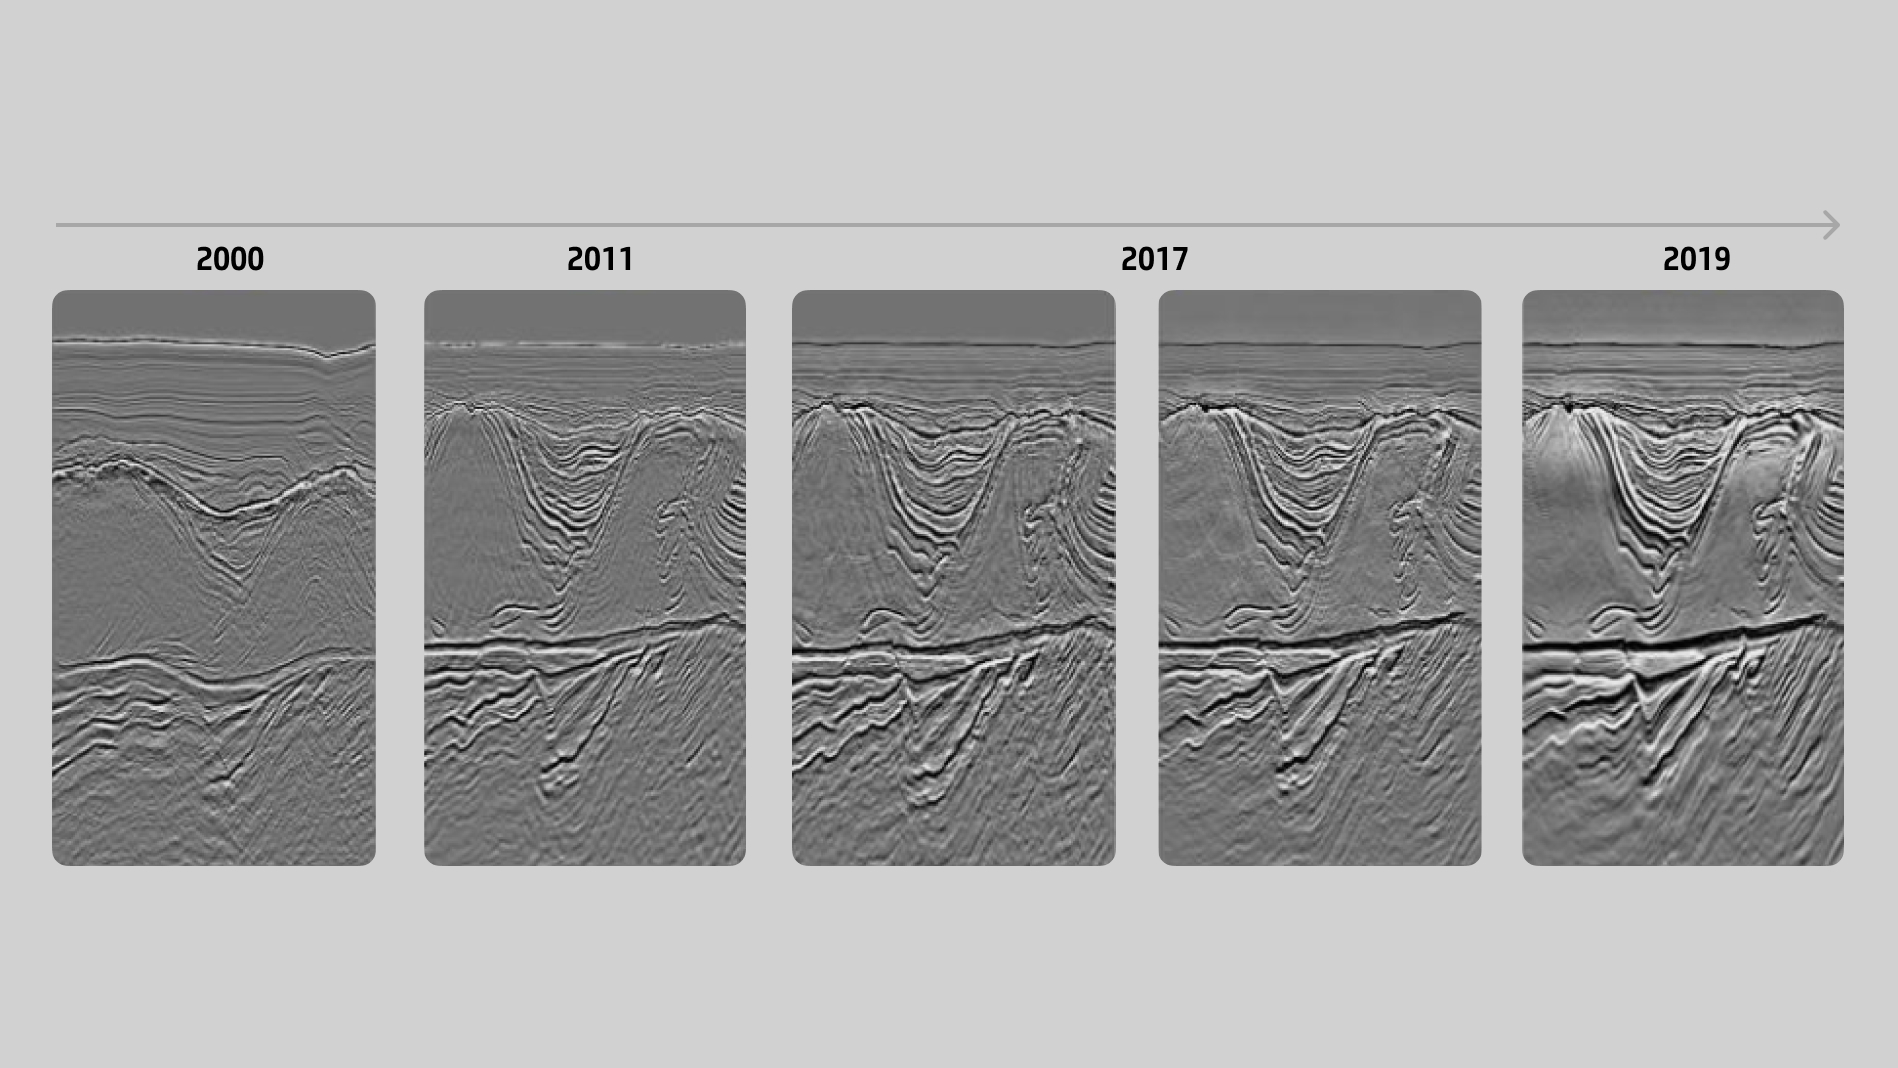 Quadro ilustrativo mostrando a evolução de imagens sísmicas, de 2000 a 2019.